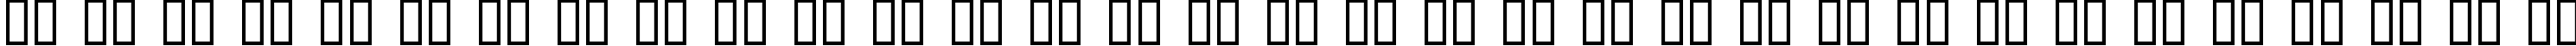 Пример написания русского алфавита шрифтом Evil Dead